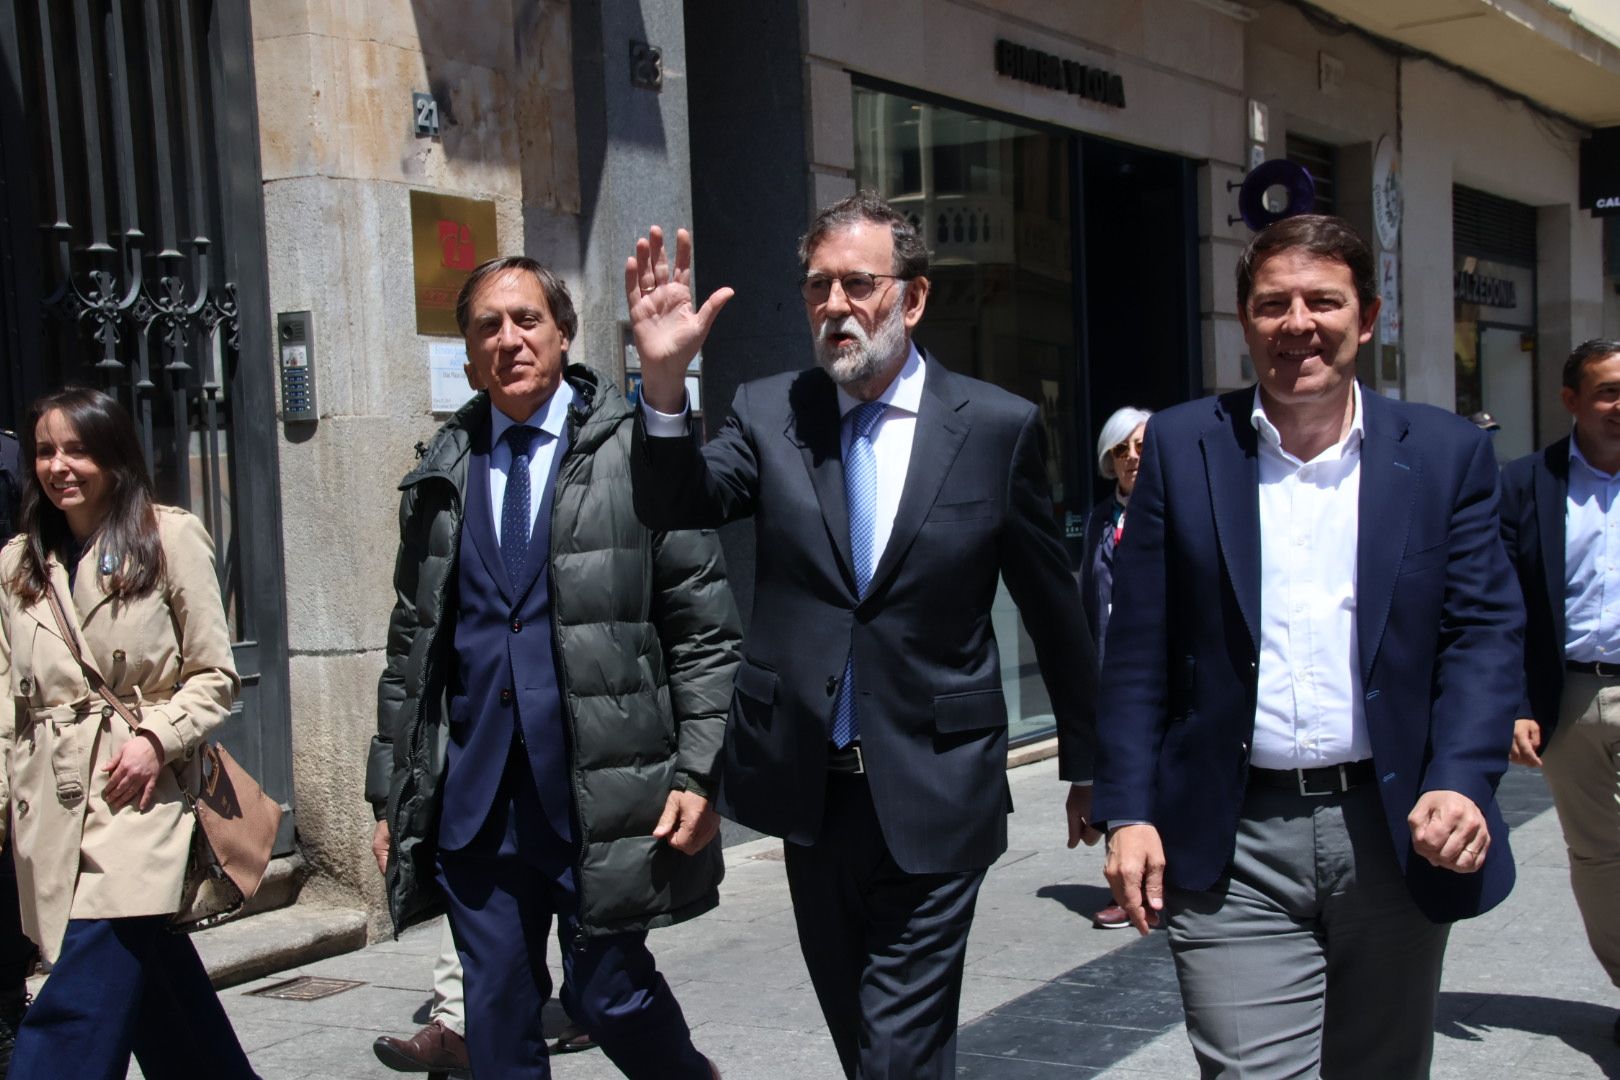 Rajoy, Mañueco y Carbayo a su llegada a la carpa del PP situada en la plaza del Liceo | Foto: Andrea M.